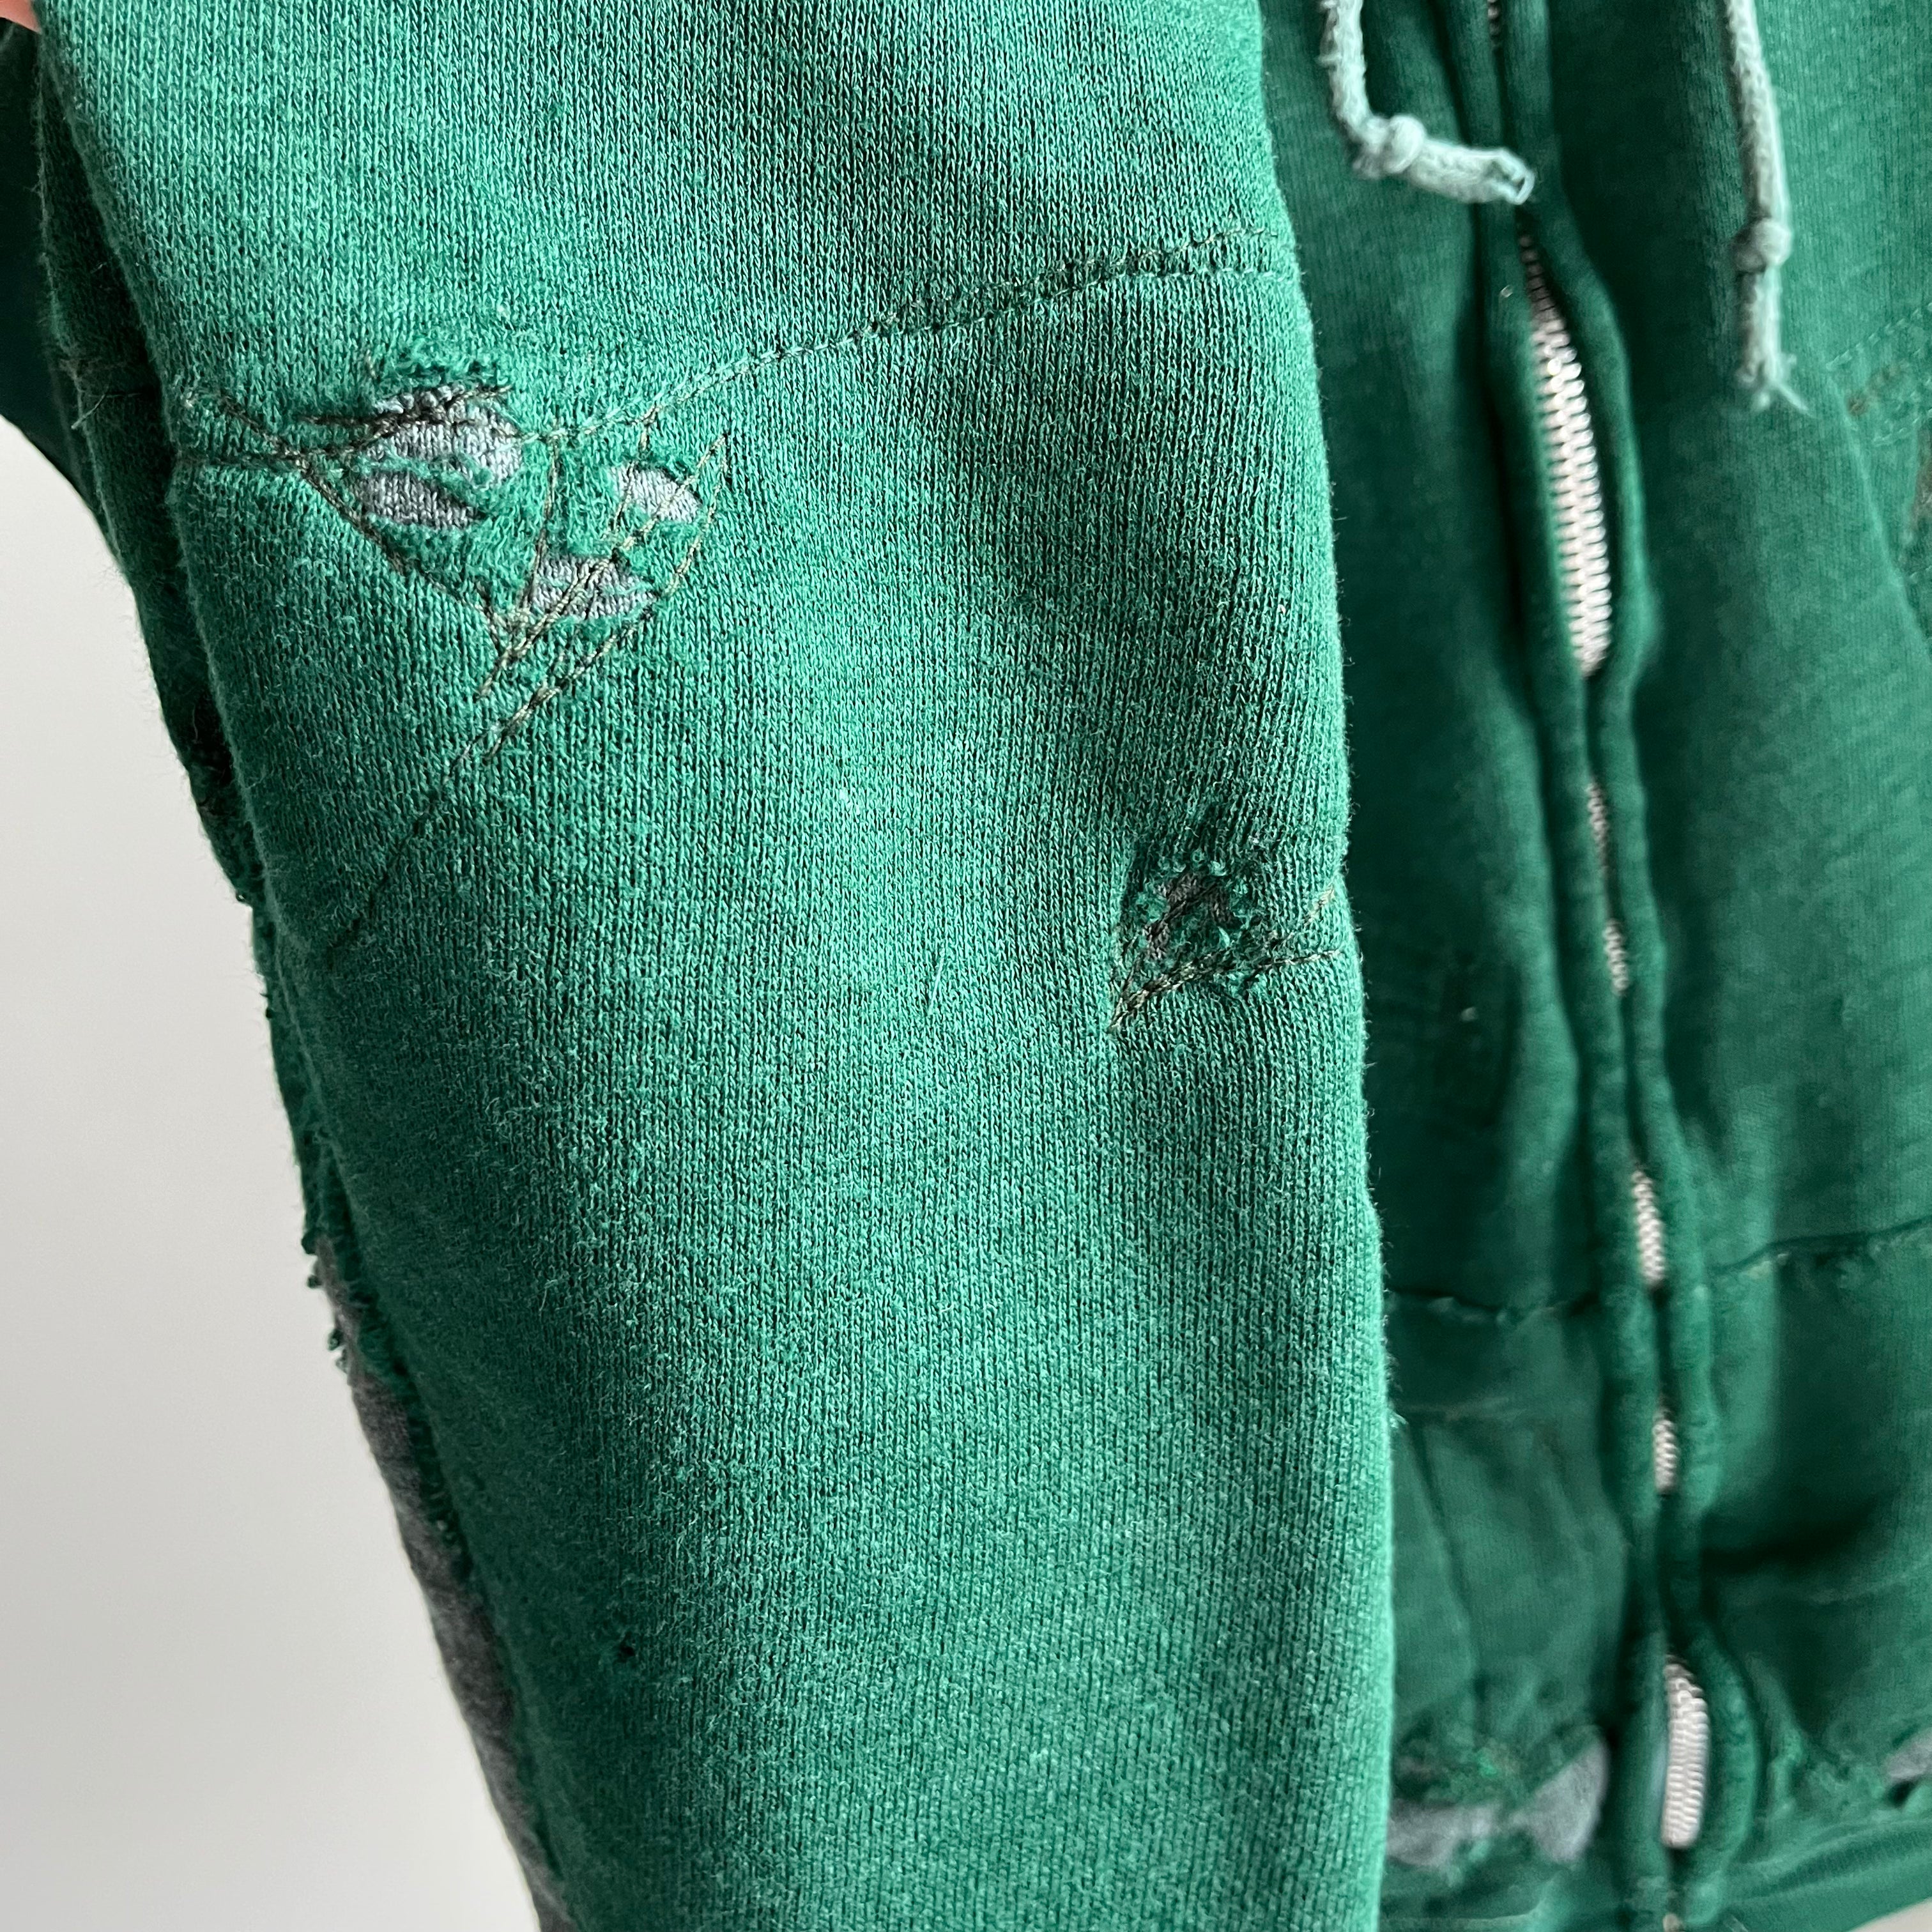 Sweat à capuche zippé avec trèfle à quatre feuilles de marque Champion des années 1970 ramené à la vie